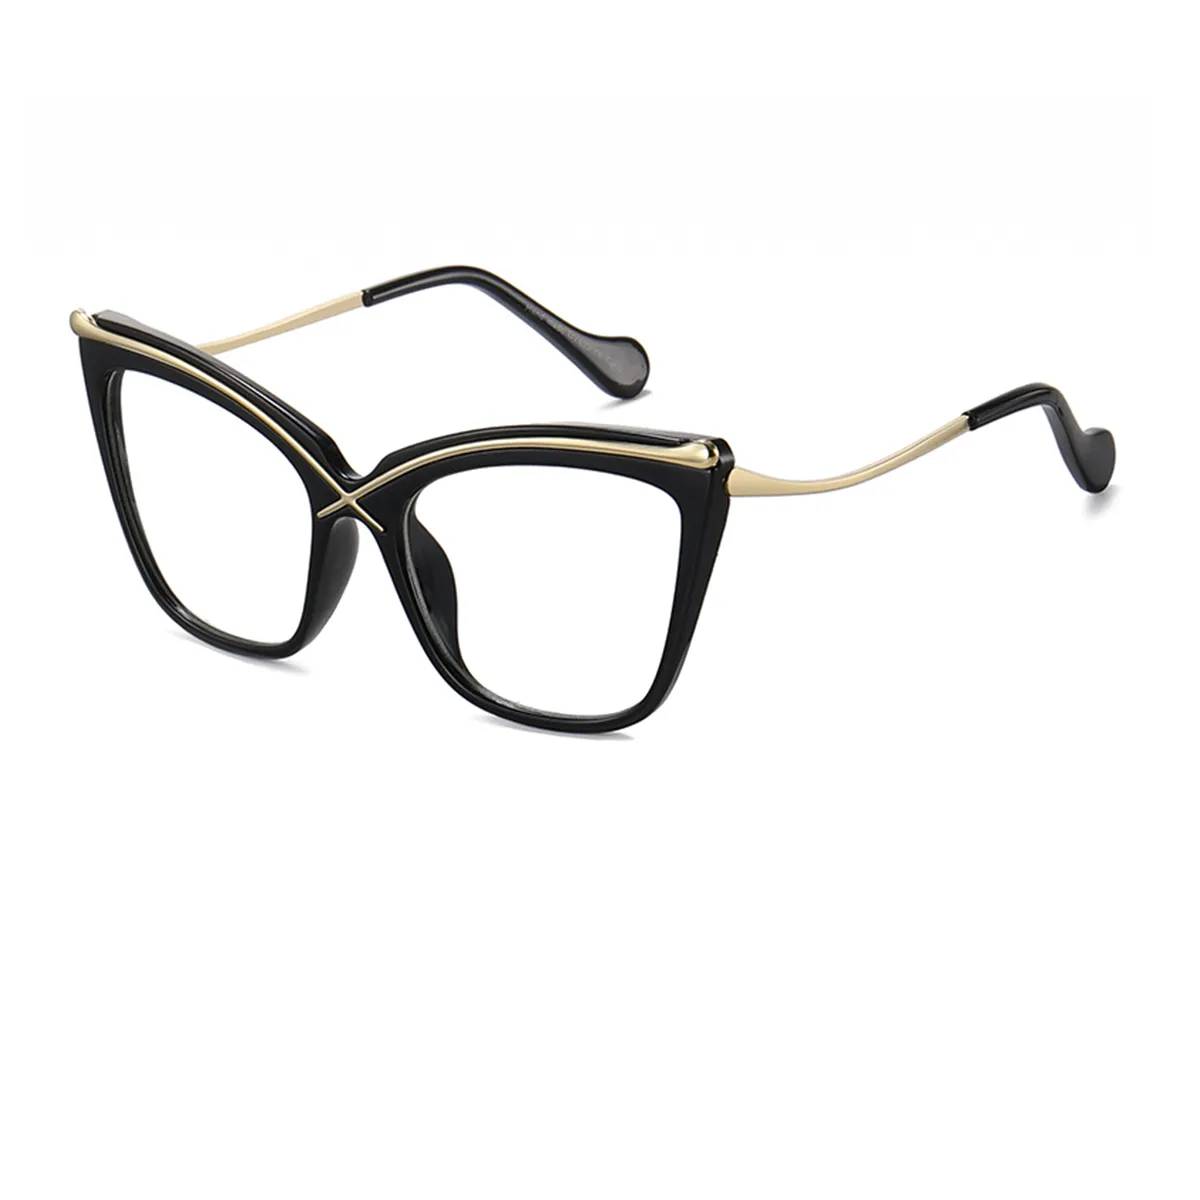 Cat-eye - Cat-eye Black Glasses for Women